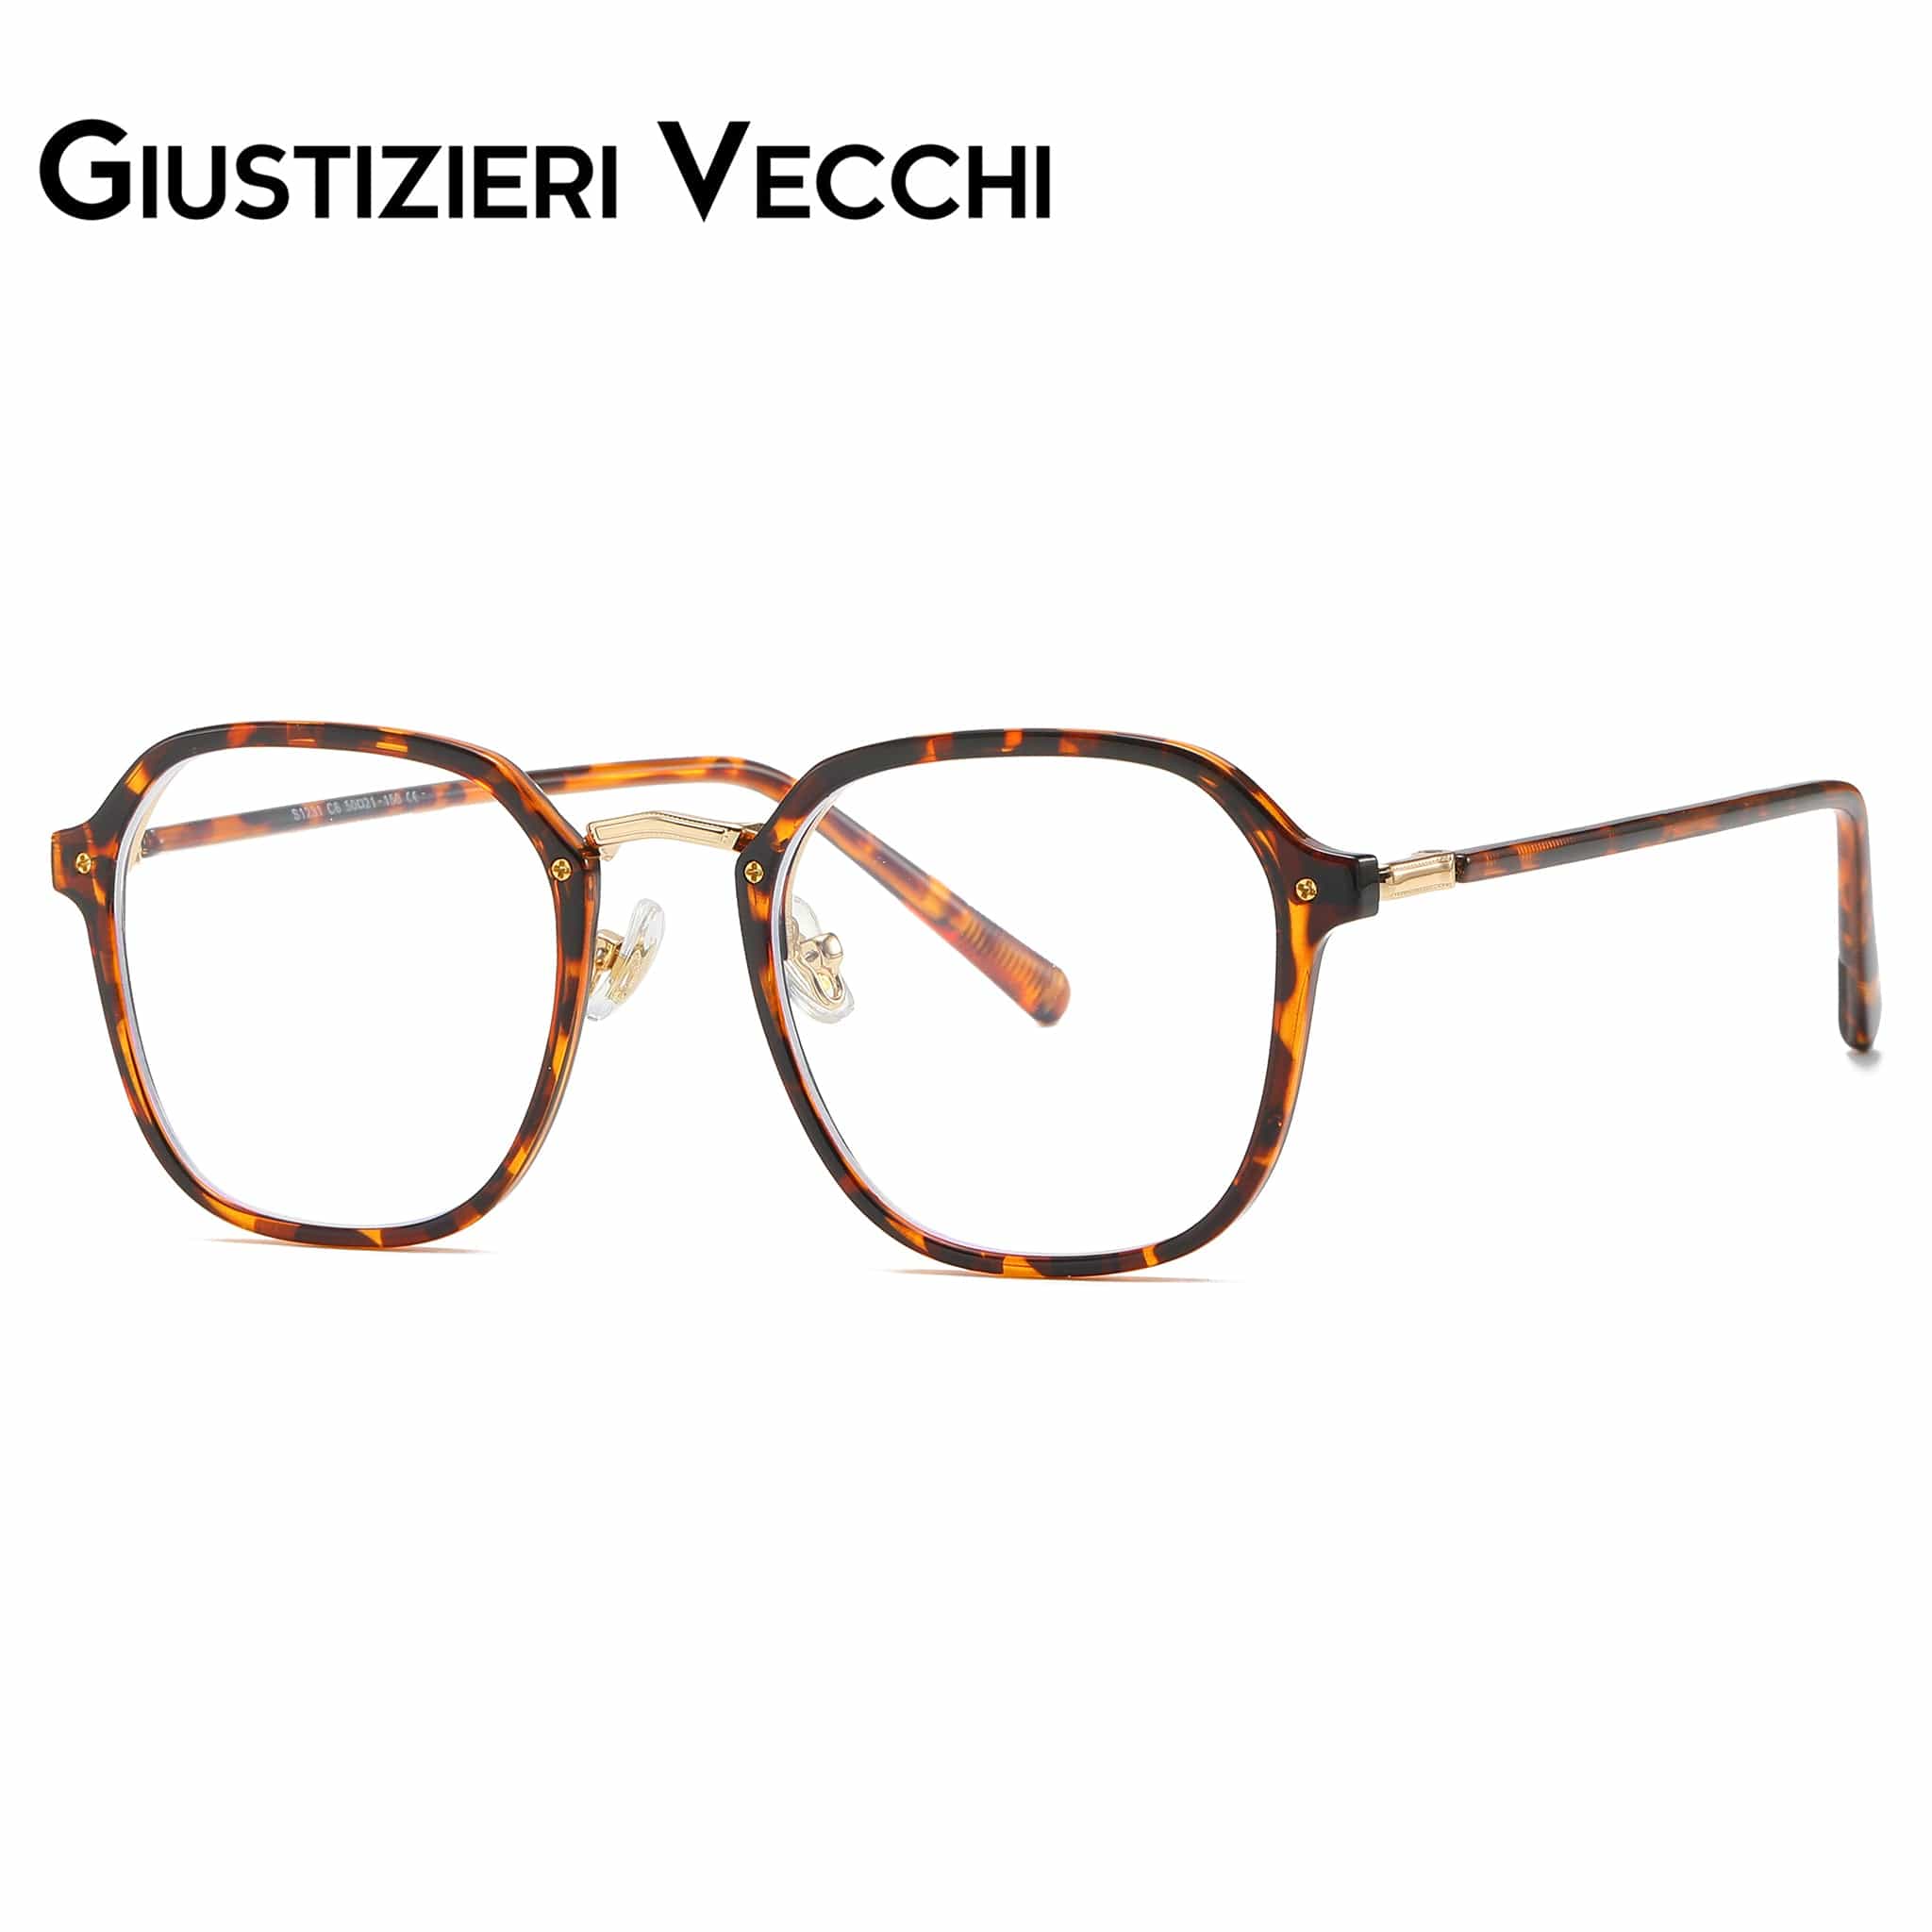 GIUSTIZIERI VECCHI Eyeglasses ModaChic Duo